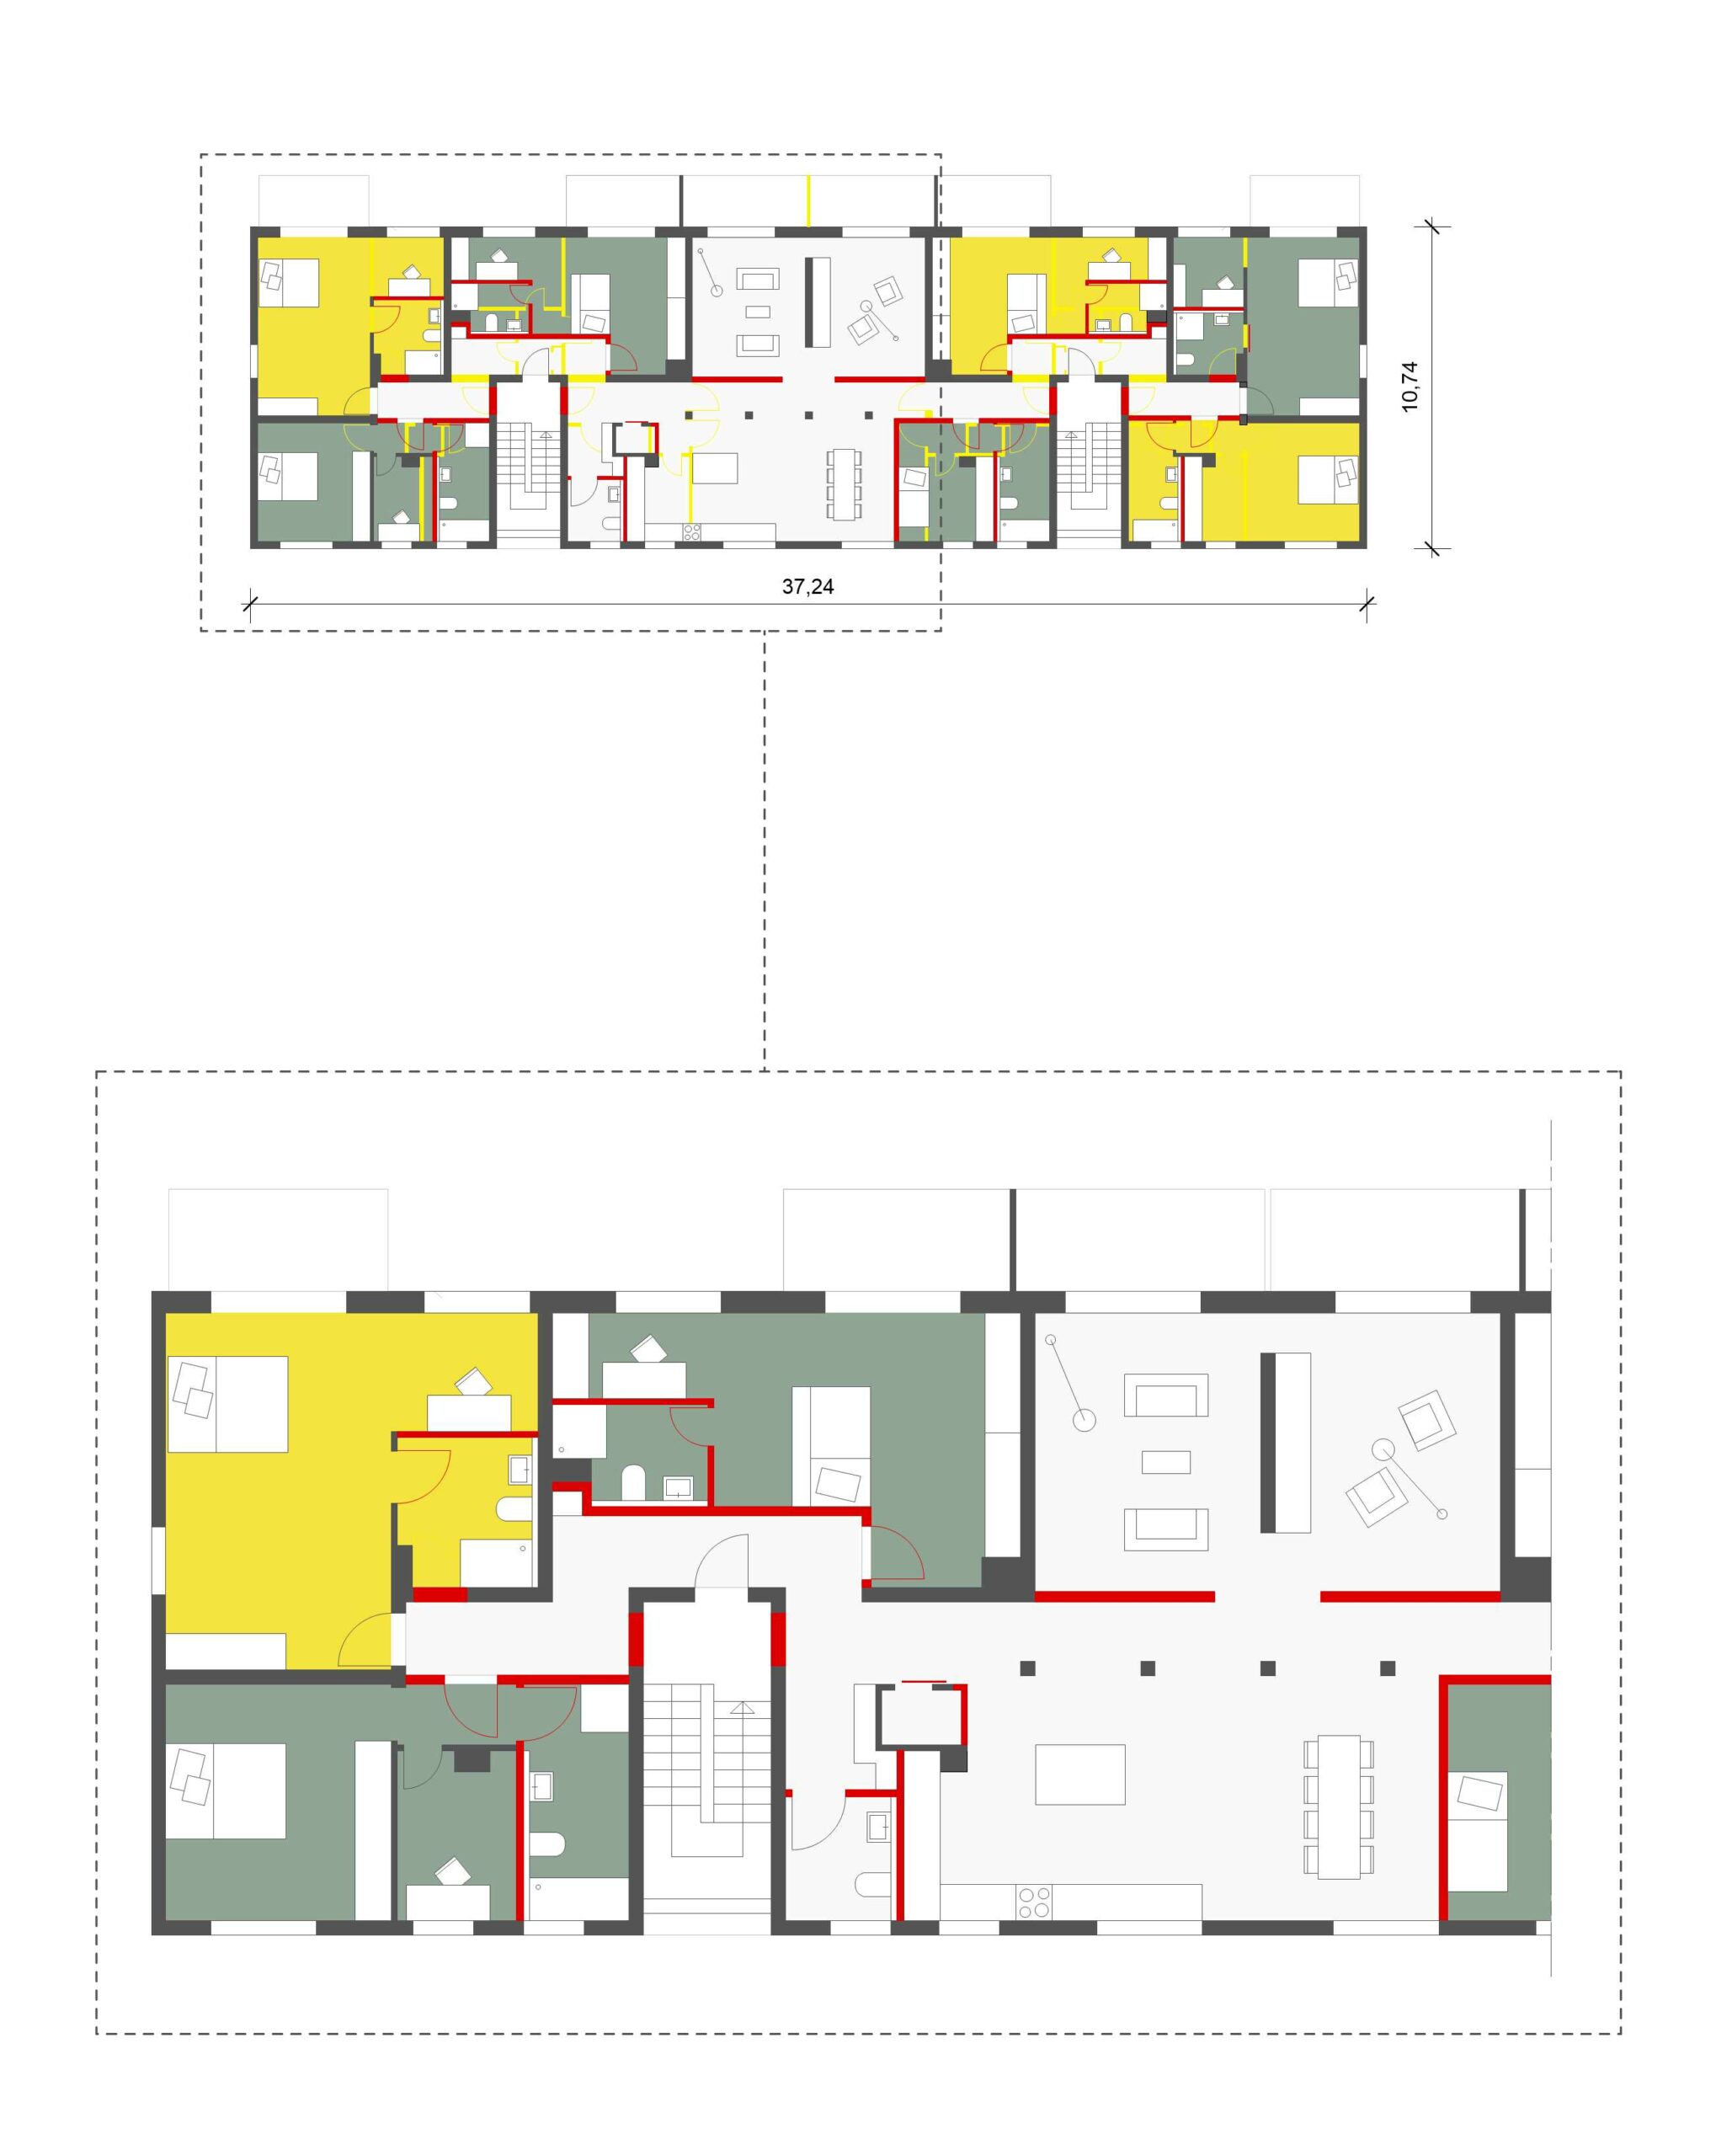 Abbildung 5: Szenario 2- Grundriss Clusterwohnung © werkum